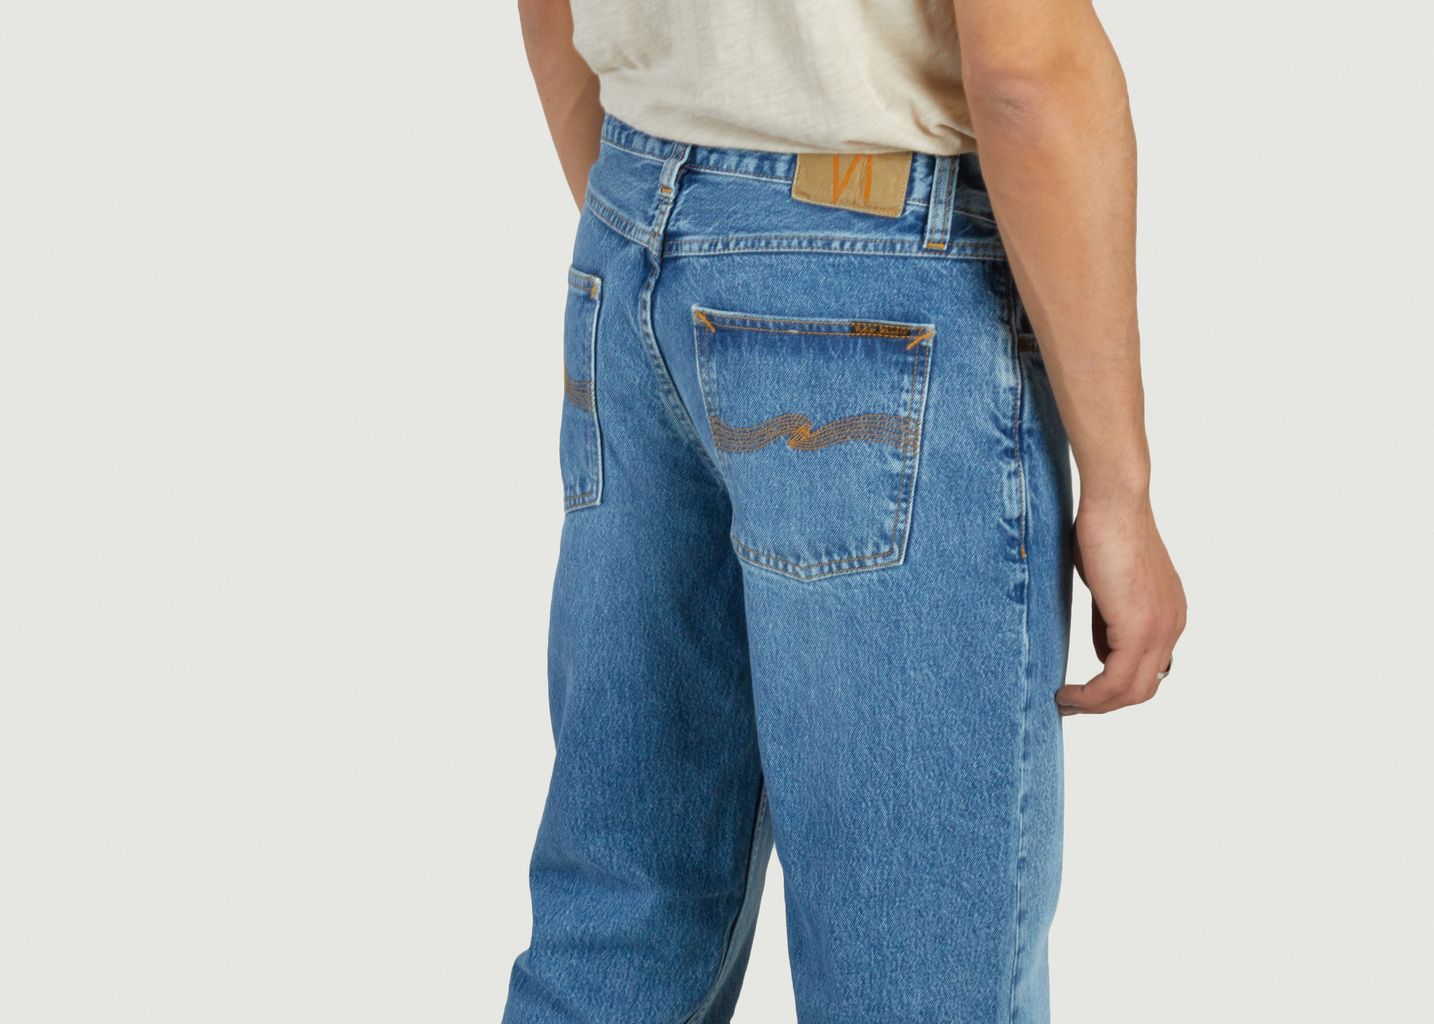 Rad Rufus jeans - Nudie Jeans